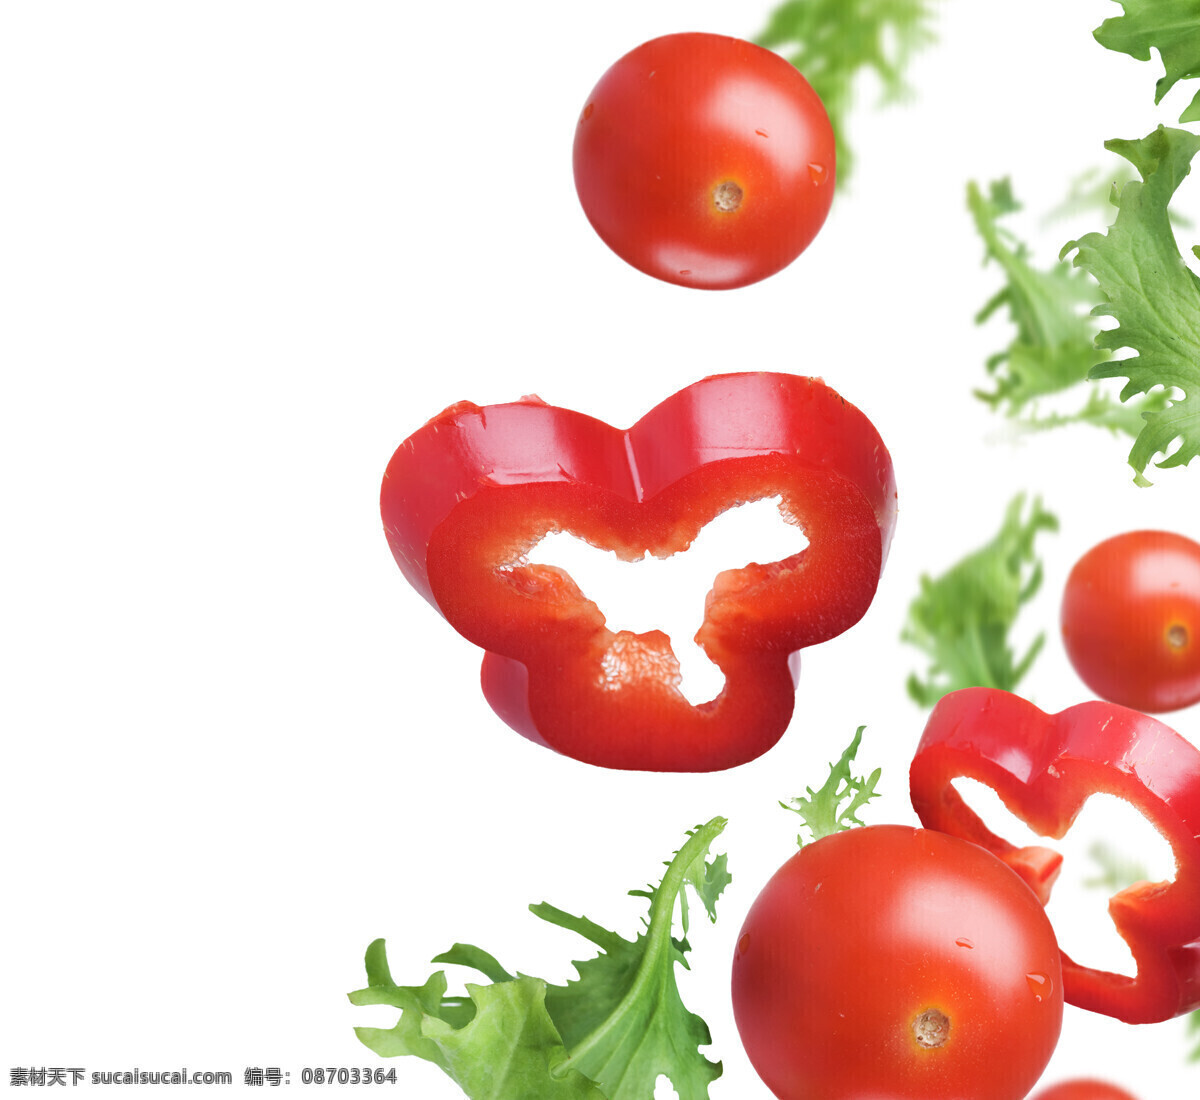 番茄 辣椒 西红柿 蔬菜沙拉 美味 美食 新鲜蔬菜 蔬菜摄影 蔬菜图片 餐饮美食